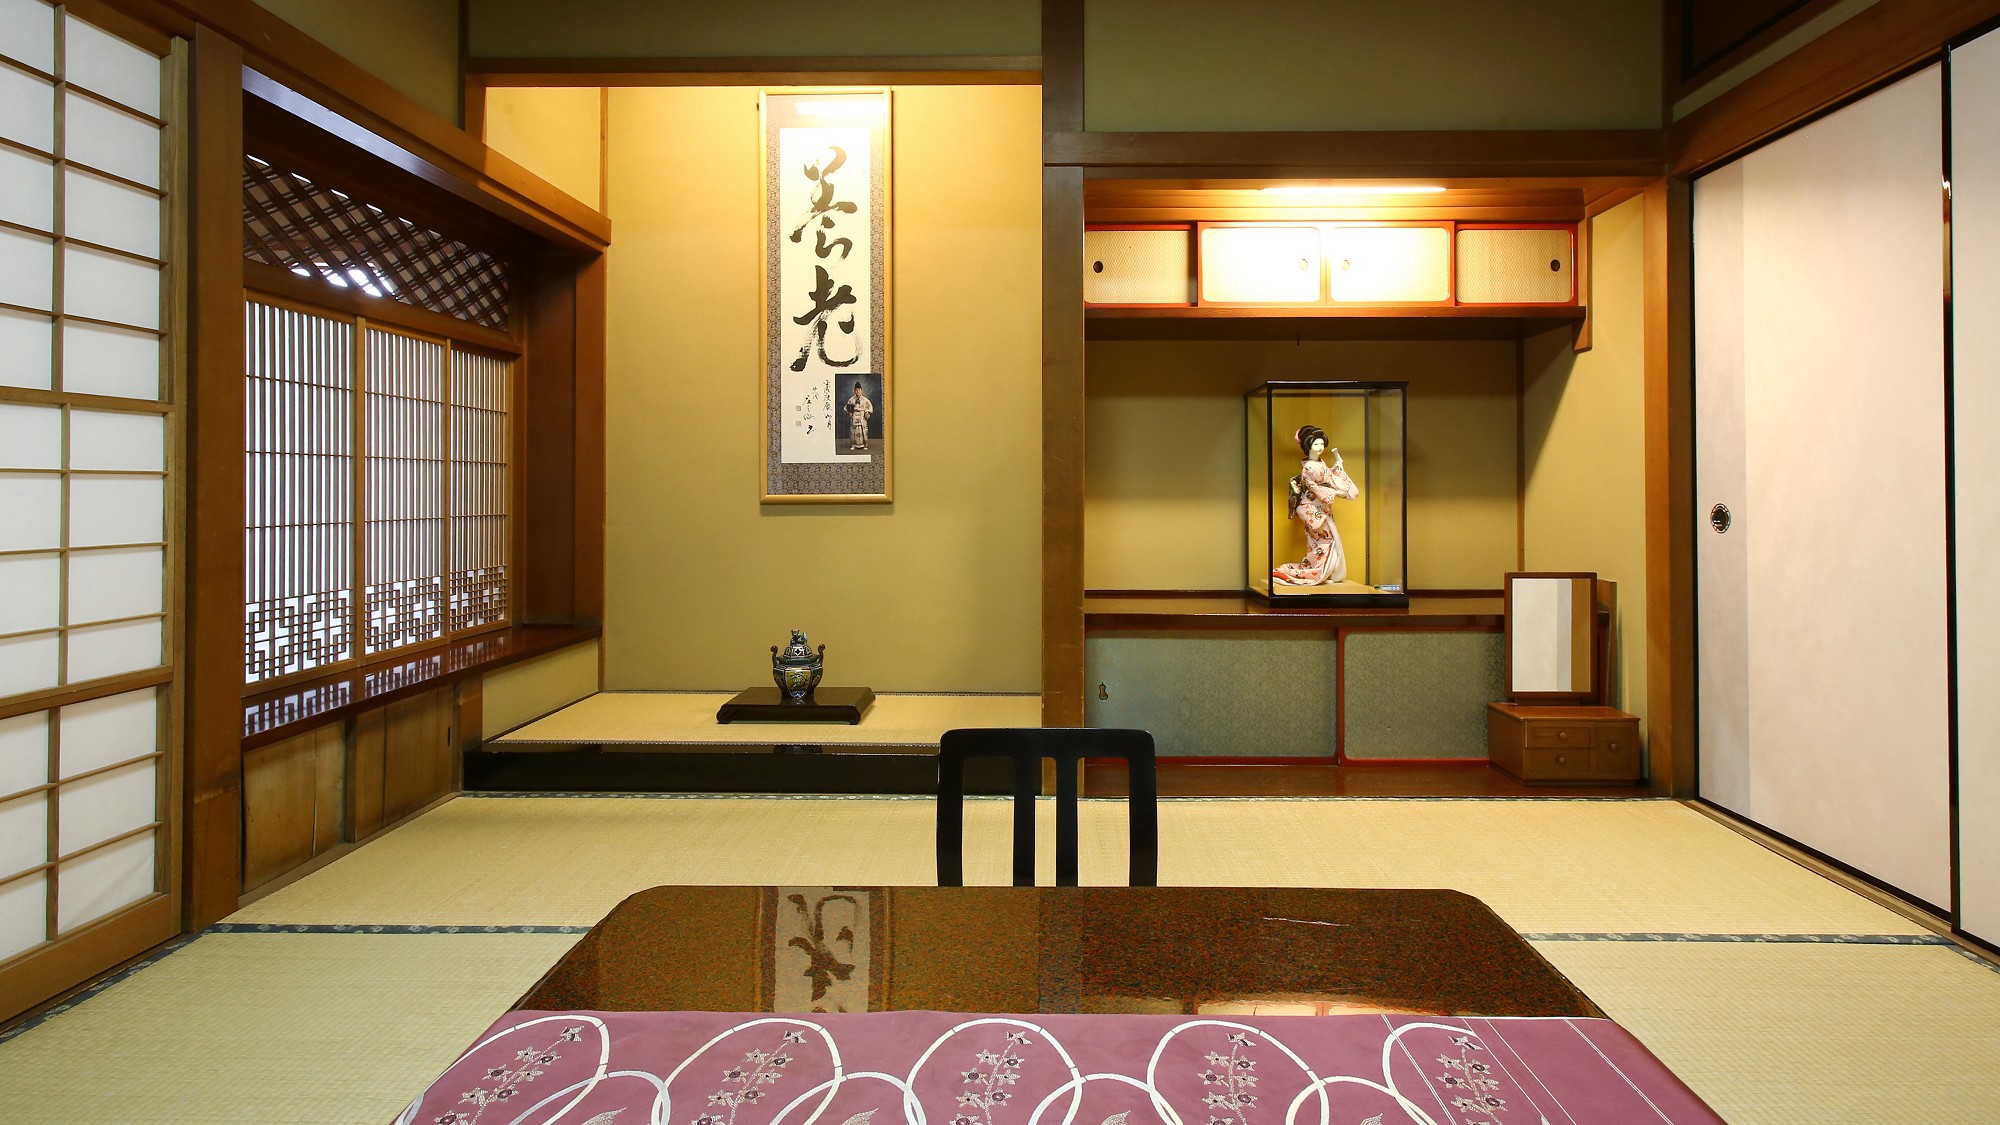 【瑠璃】木曽川を望む、檜造りの和室。素朴で静かな佇まいの中に、歴史と和の風情が漂います。